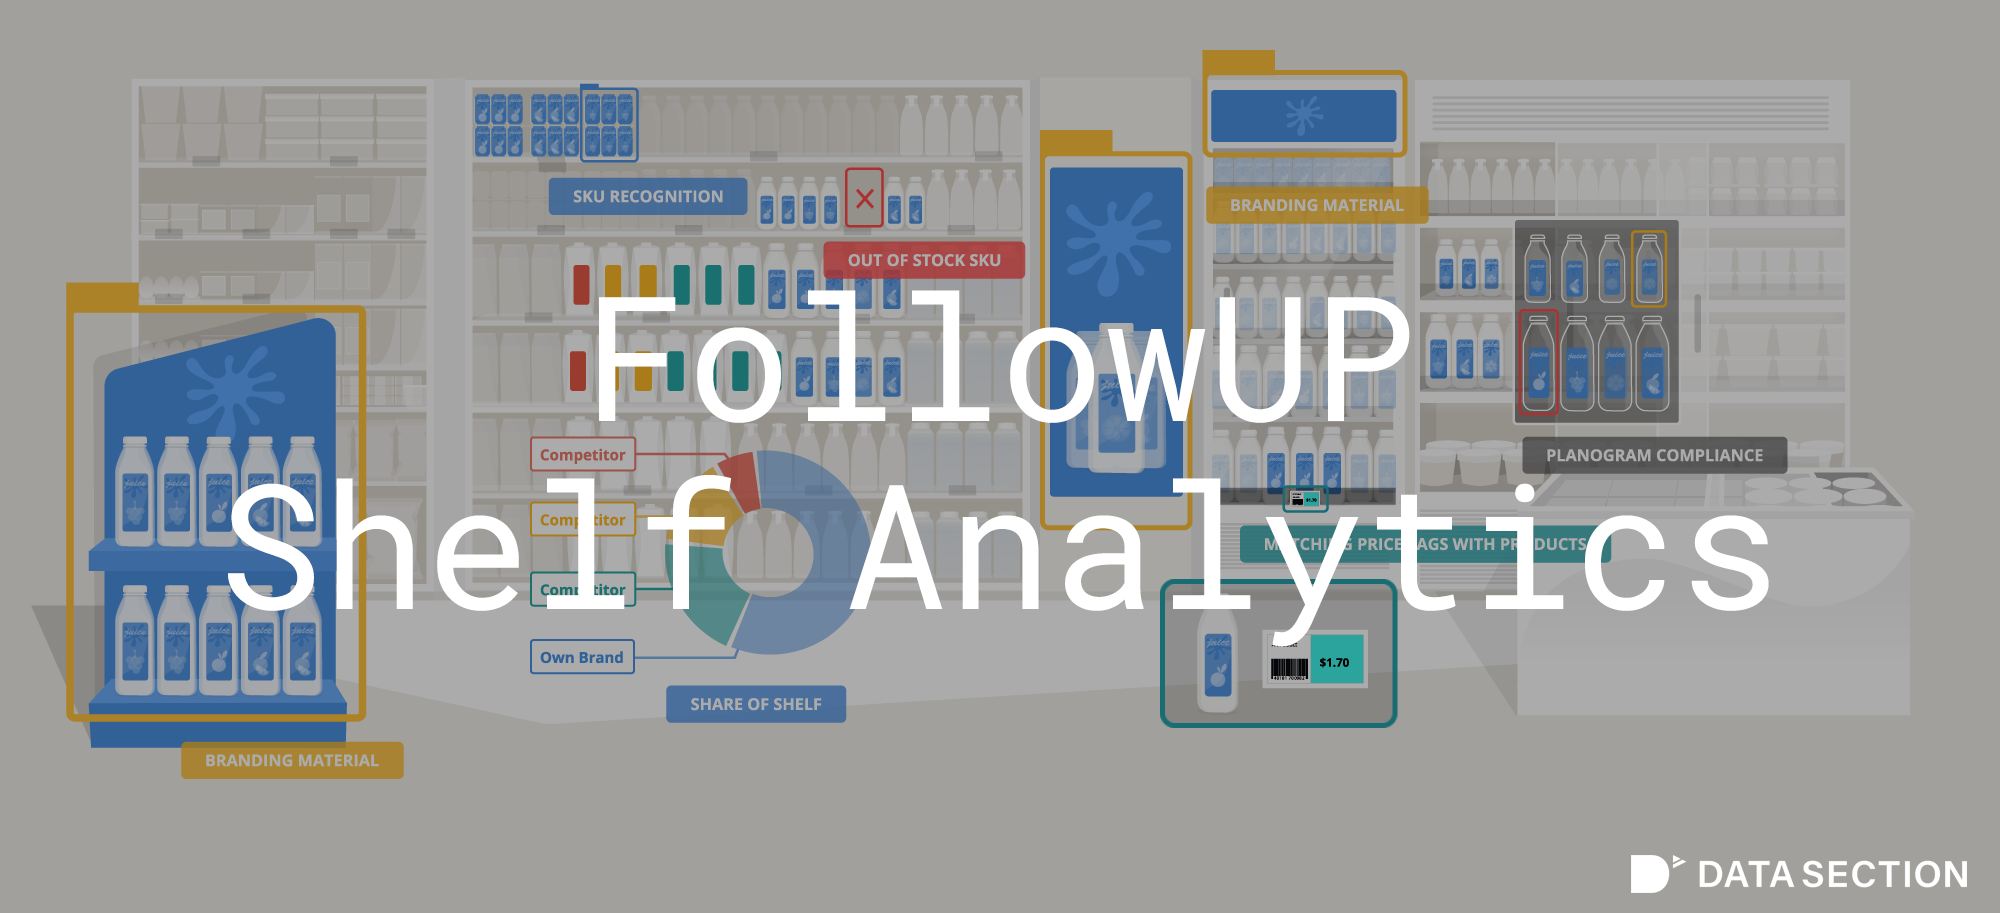 データセクション、スーパーマーケット向け商品棚解析ソリューション「FollowUP Shelf Analytics」をリリース